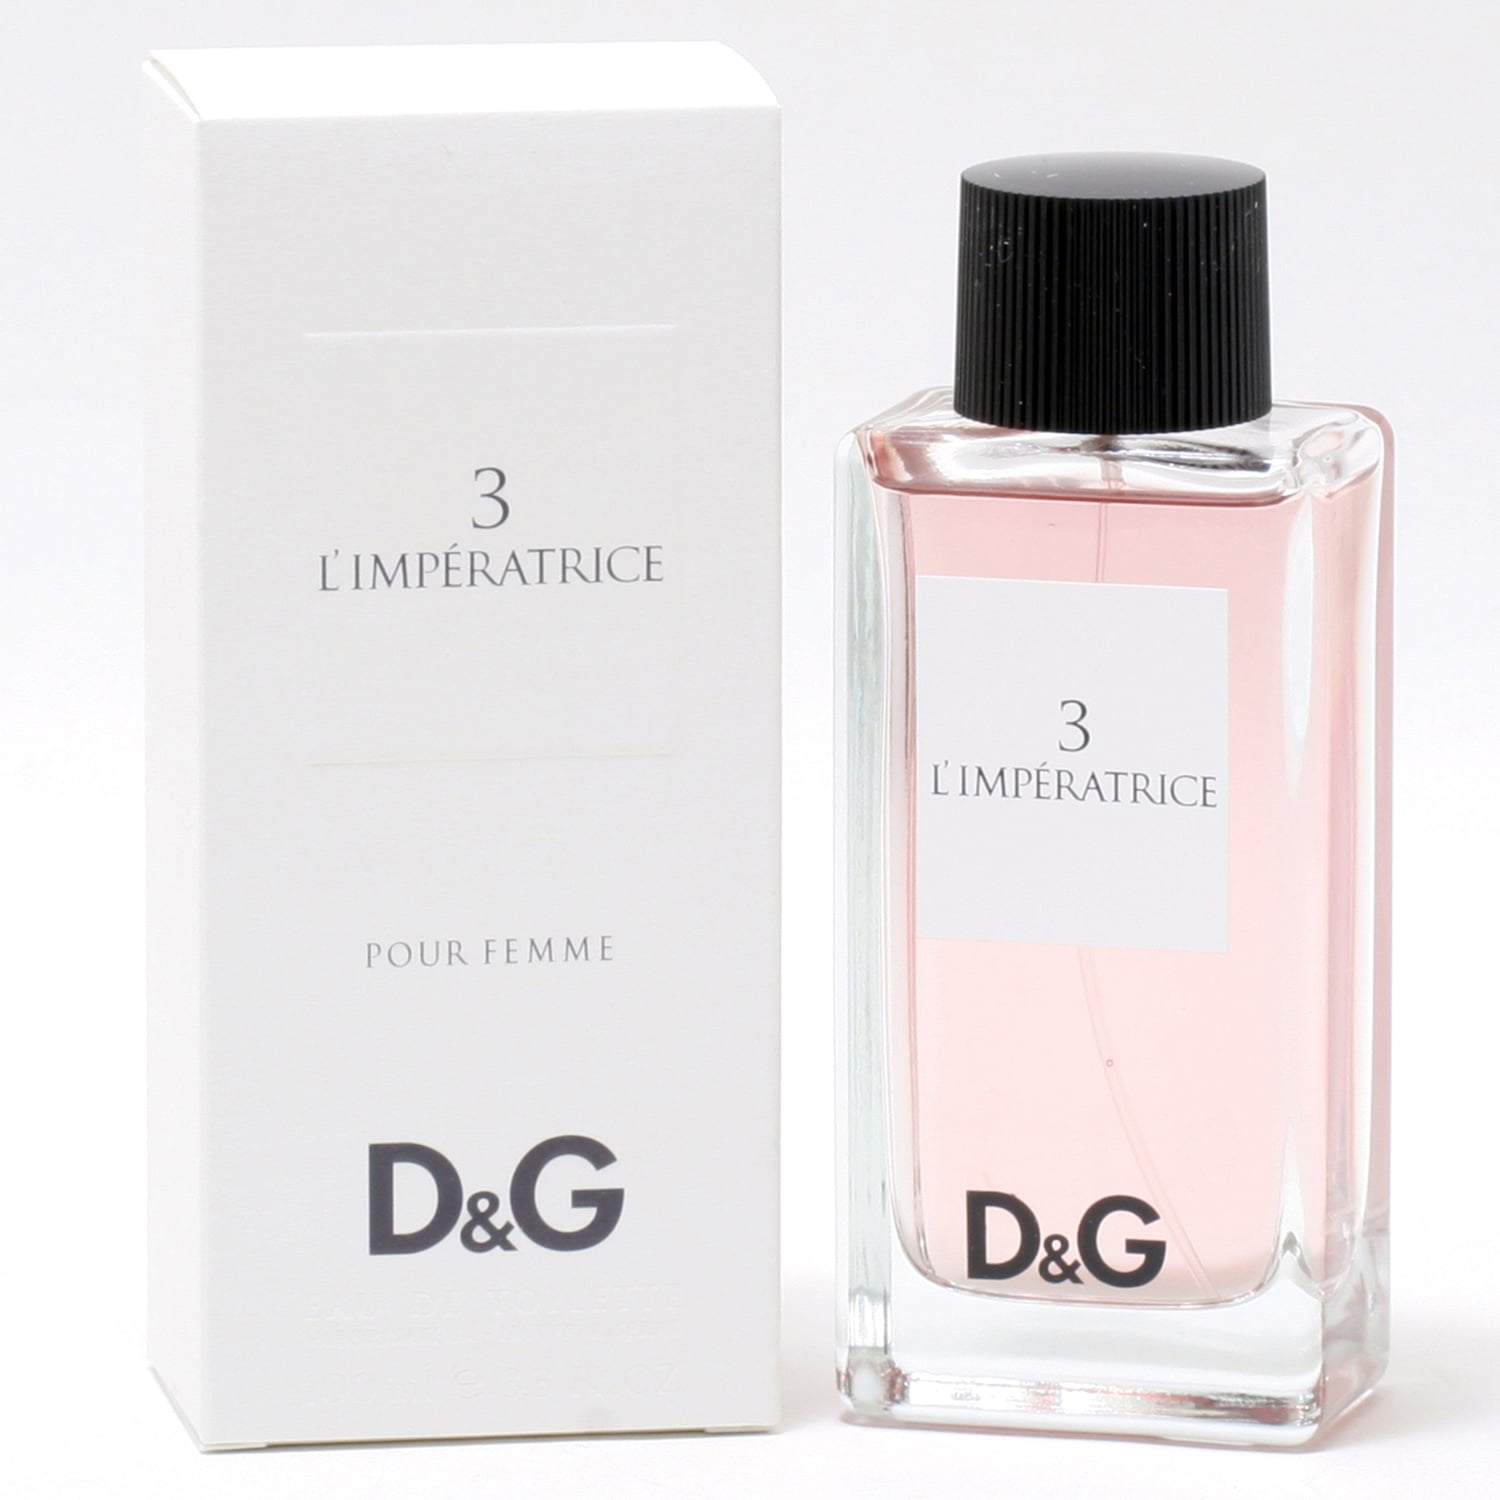 D & G 3 L'IMPERATRICE by Dolce & Gabbana EDT SPRAY 3.3 OZ - Walmart.com